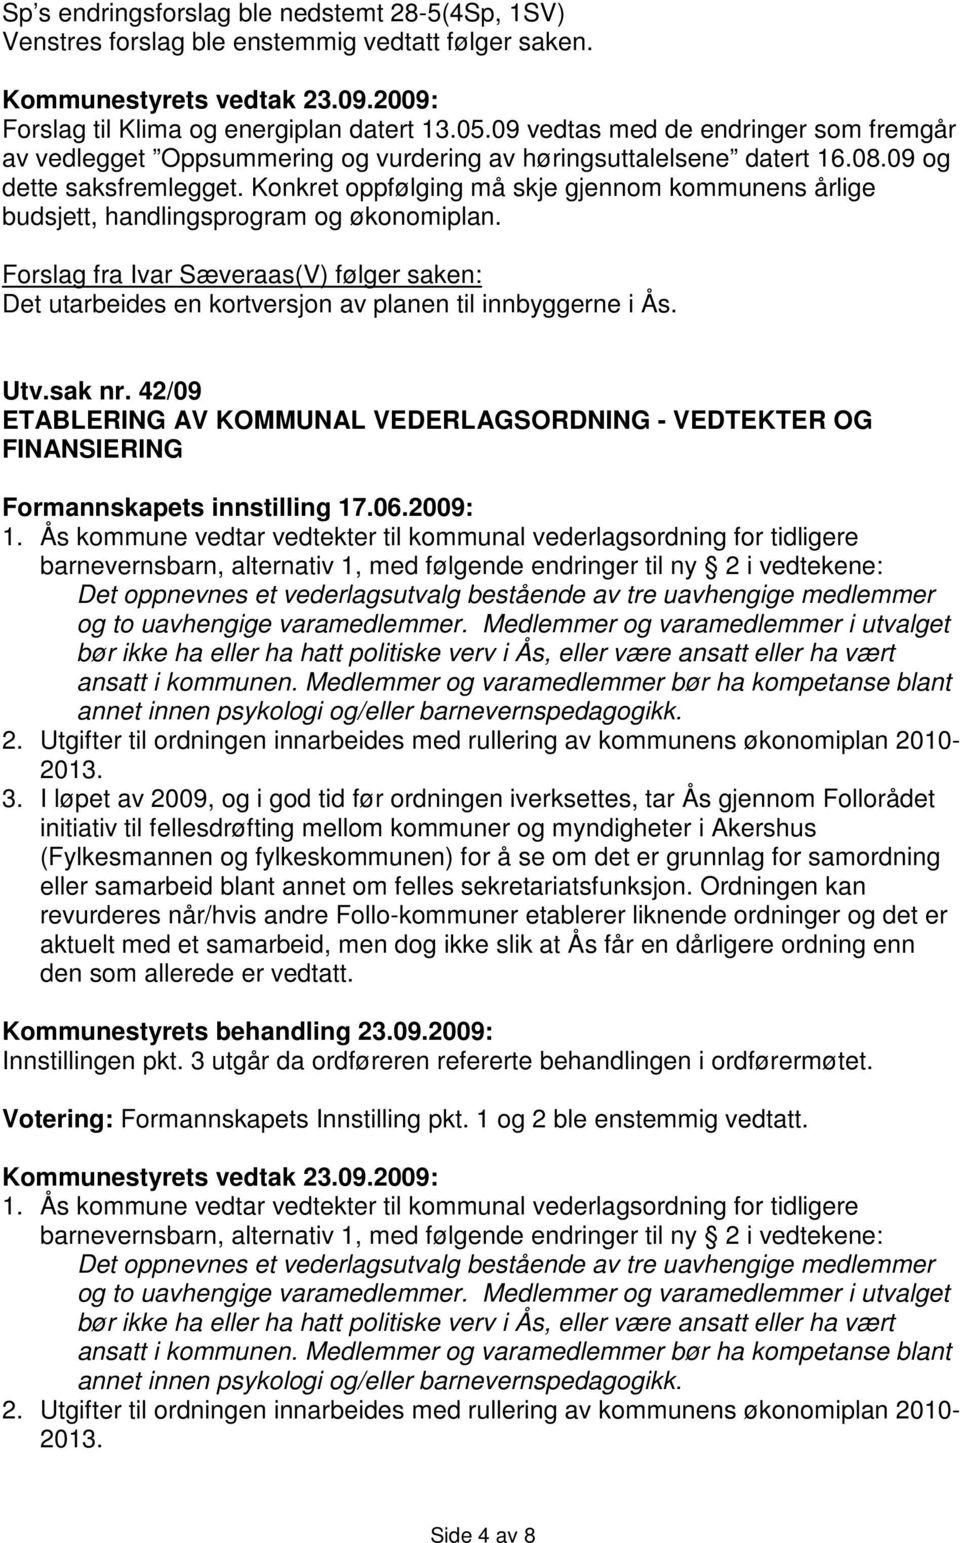 Konkret oppfølging må skje gjennom kommunens årlige budsjett, handlingsprogram og økonomiplan. Forslag fra Ivar Sæveraas(V) følger saken: Det utarbeides en kortversjon av planen til innbyggerne i Ås.